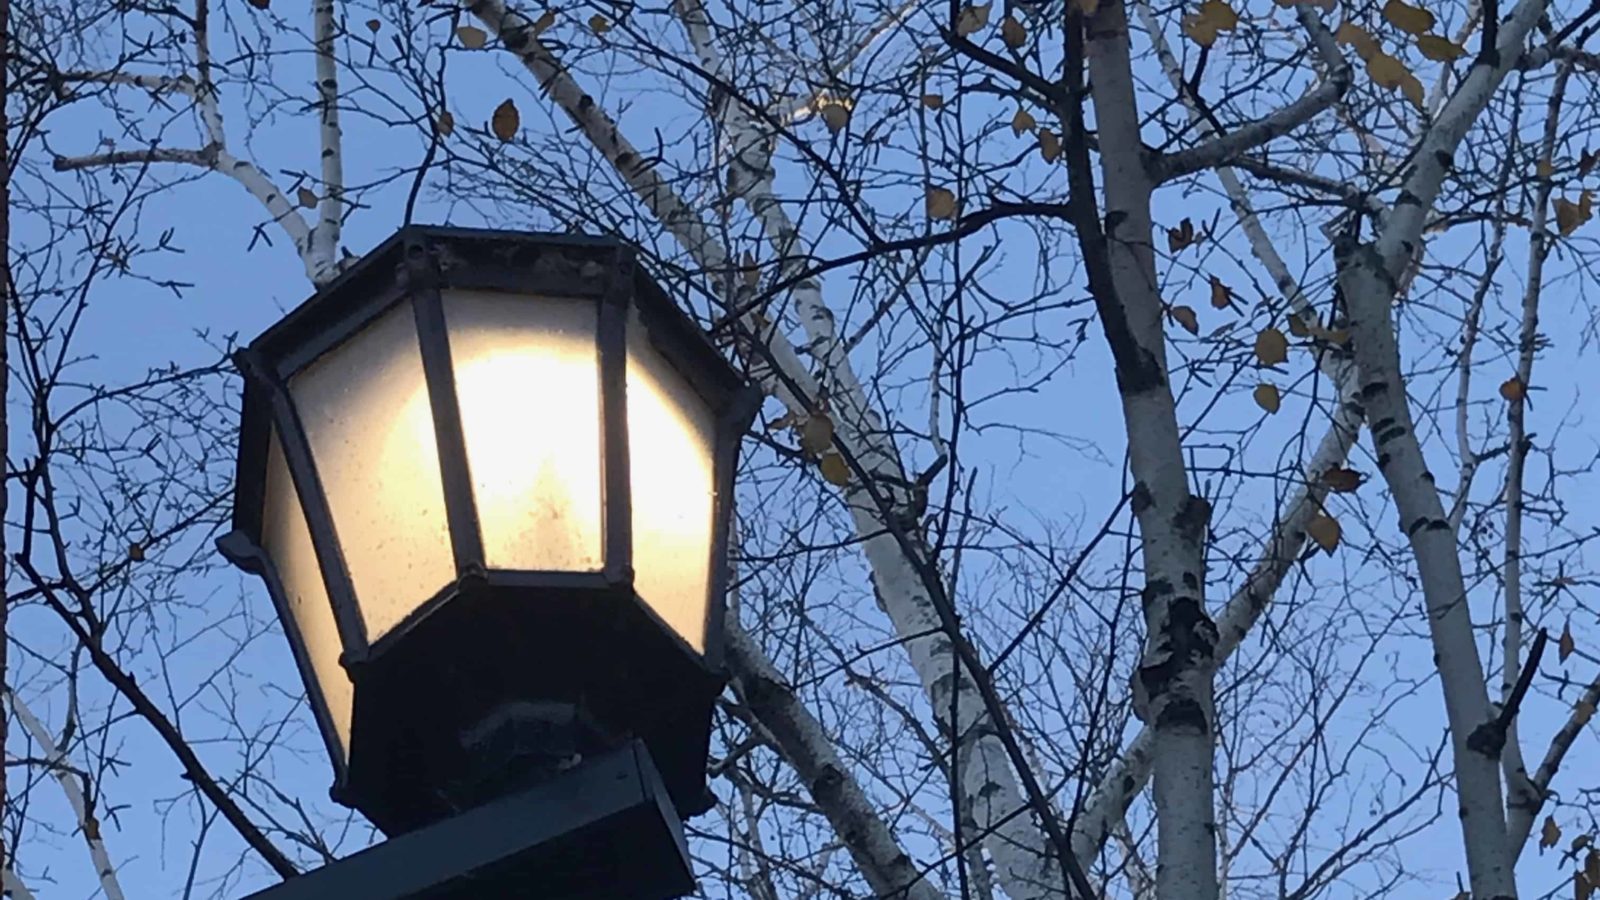 Lanterns are alight in Greylock Quad at Williams College.